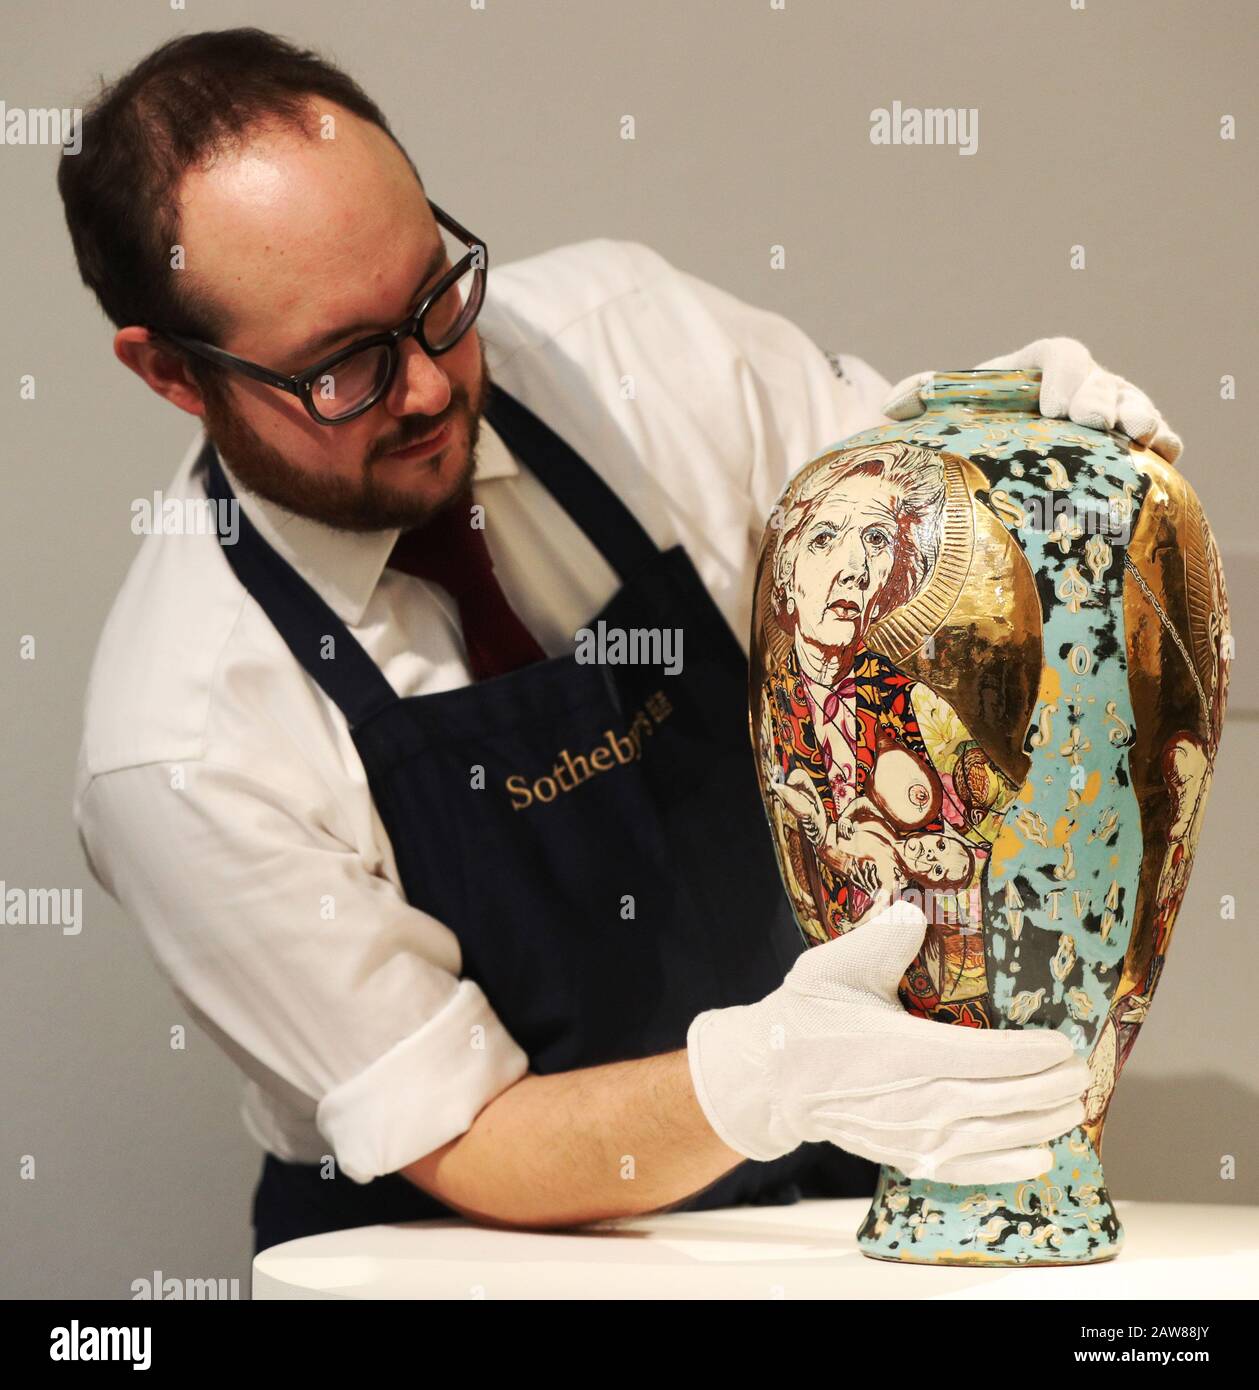 Un employé de Sotheby gère les lettres d'amour de Grayson Perry lors d'un appel photo pour les nouvelles enchères d'art contemporain de Sotheby's au centre de Londres. Banque D'Images